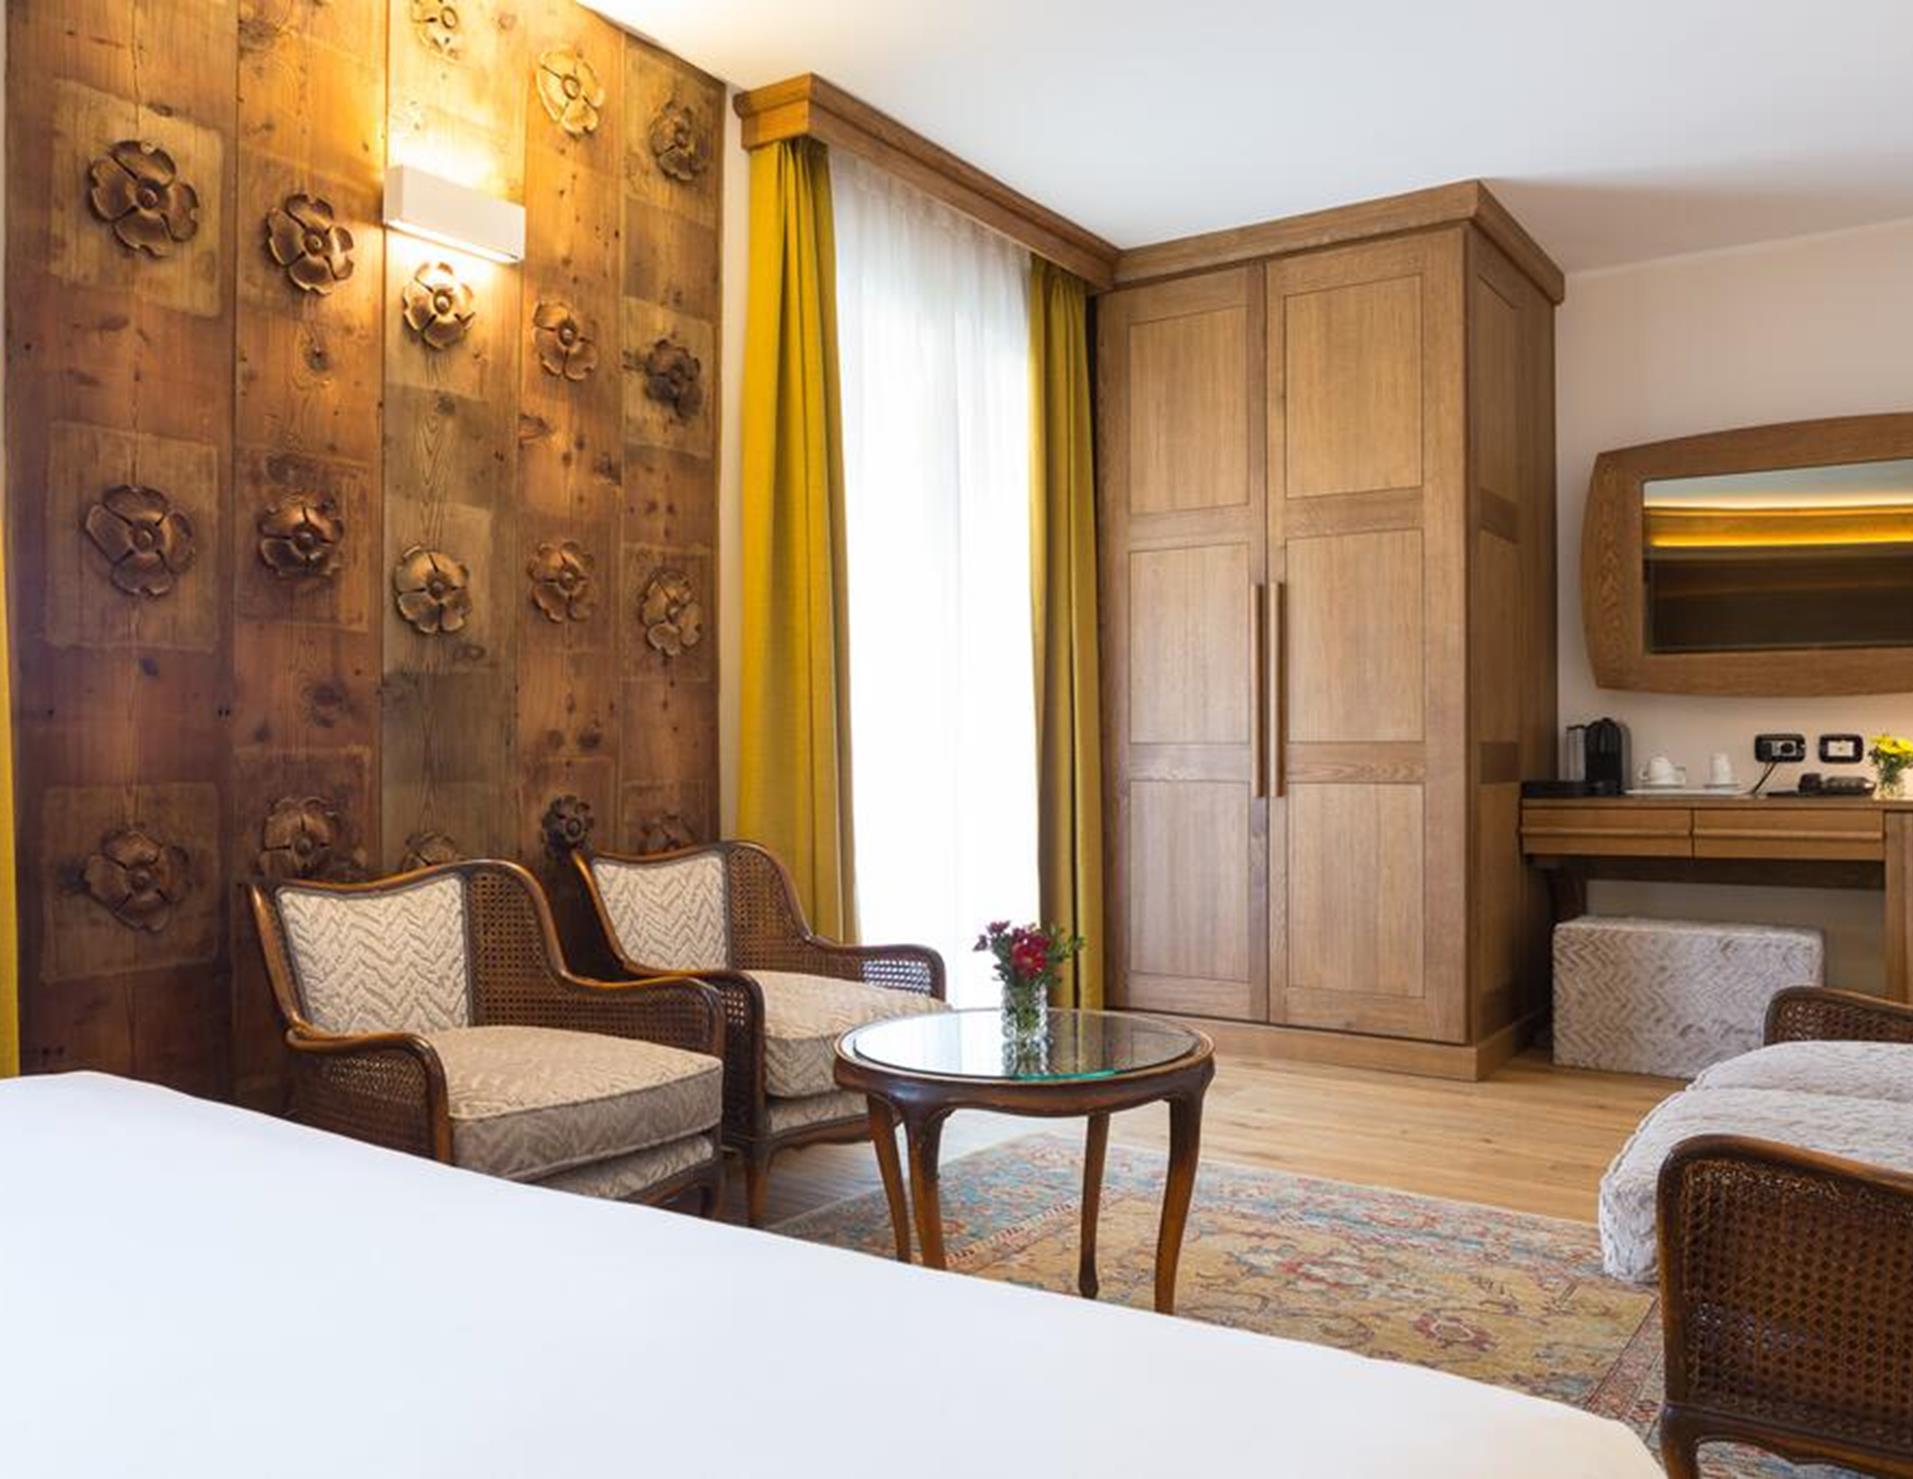 Duca D'Aosta Hotel - Room 4